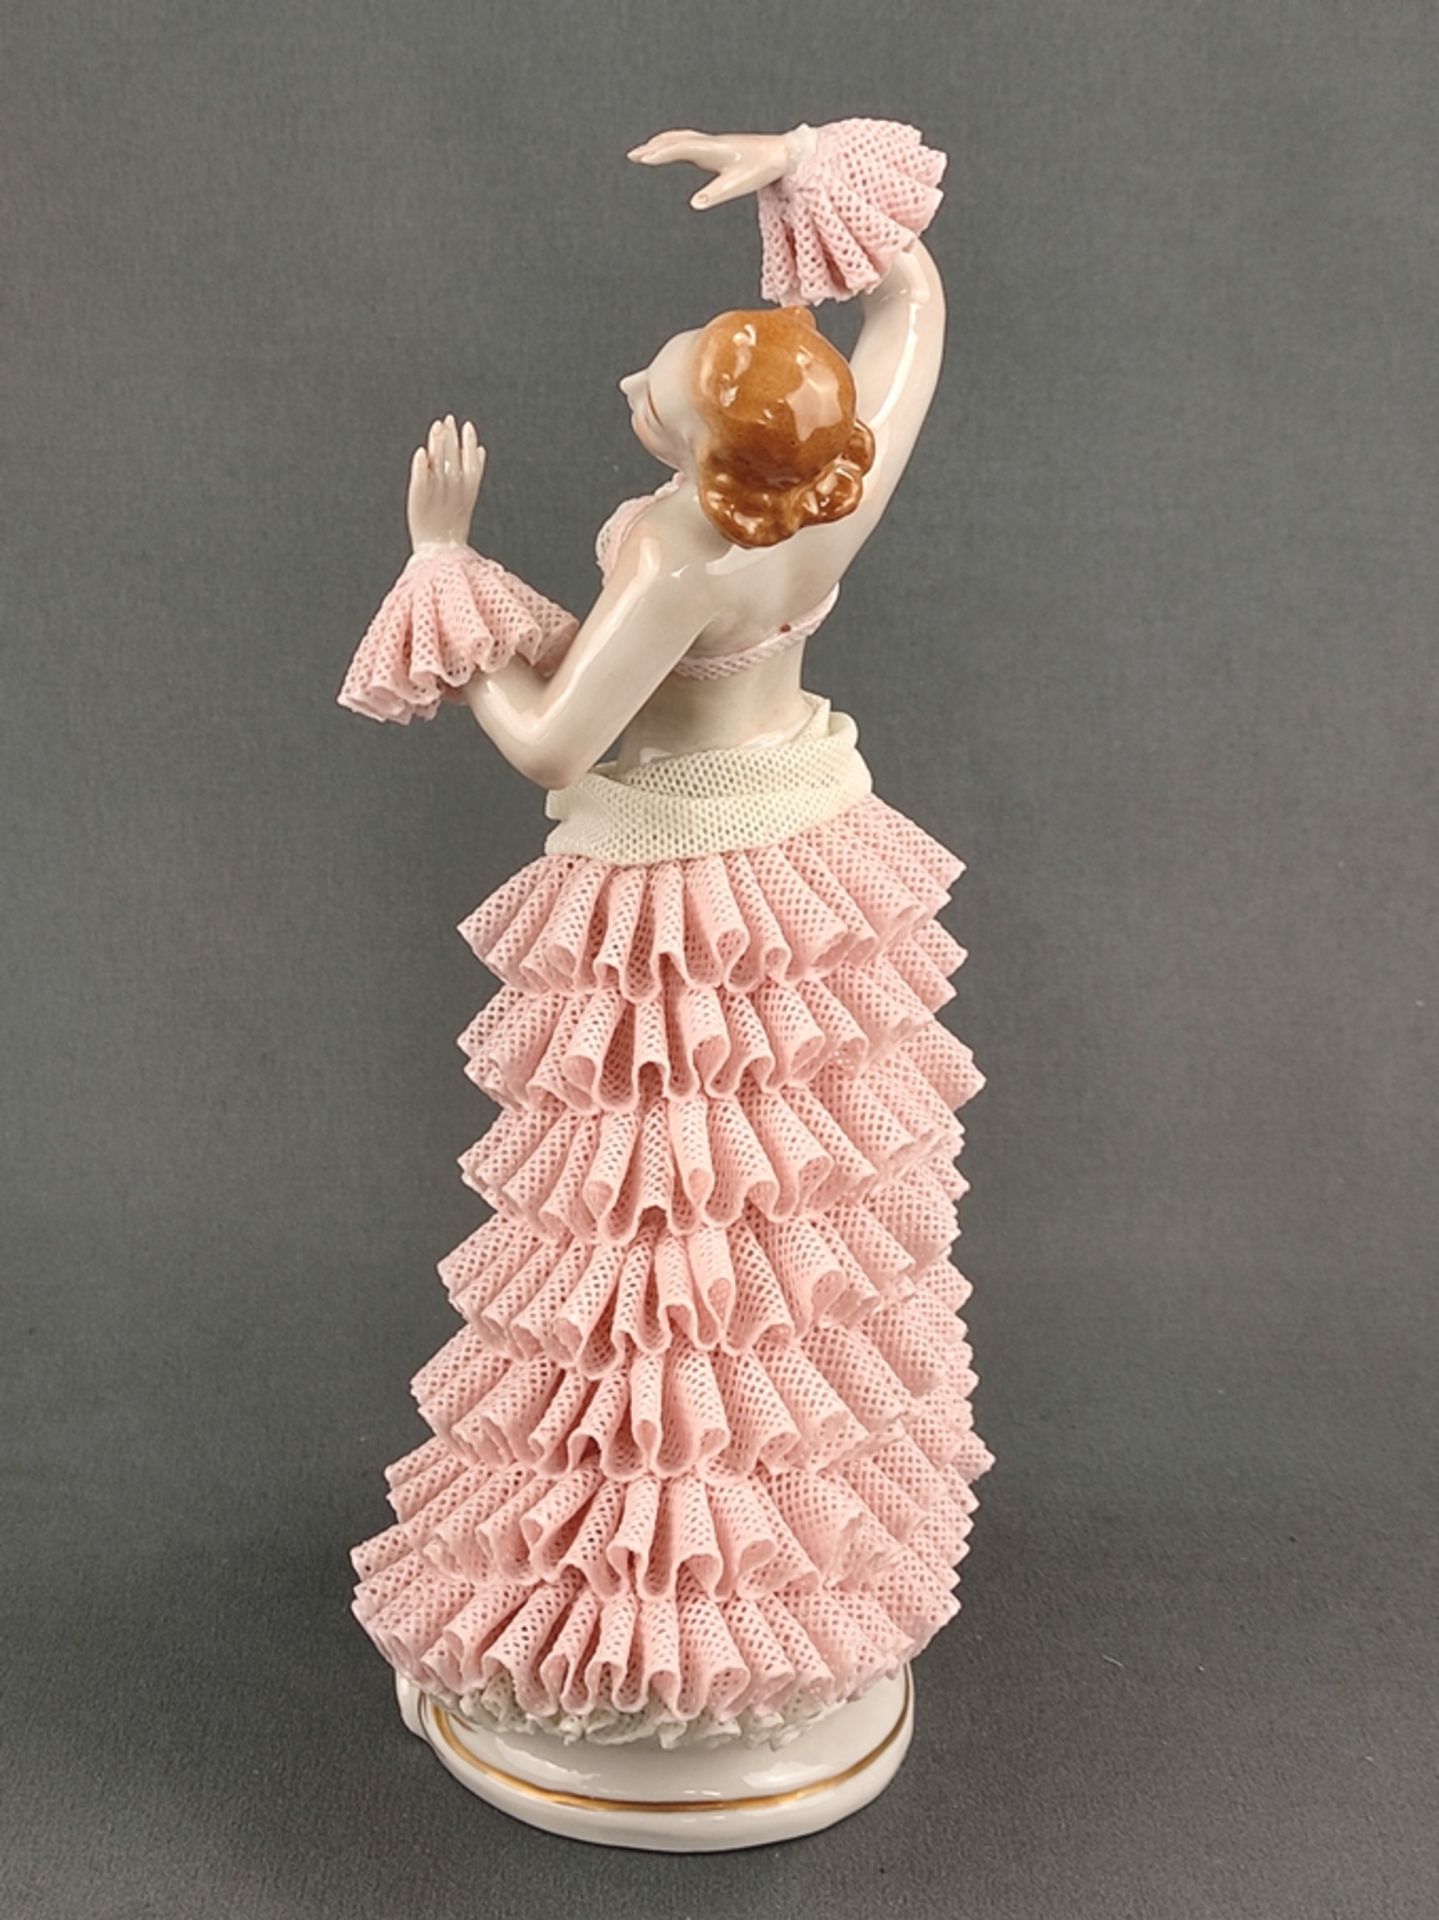 Porzellanfigur "Tänzerin", Sitzendorfer Porzellanmanufaktur, 20. Jahrhundert, vollplastische Darste - Bild 5 aus 7